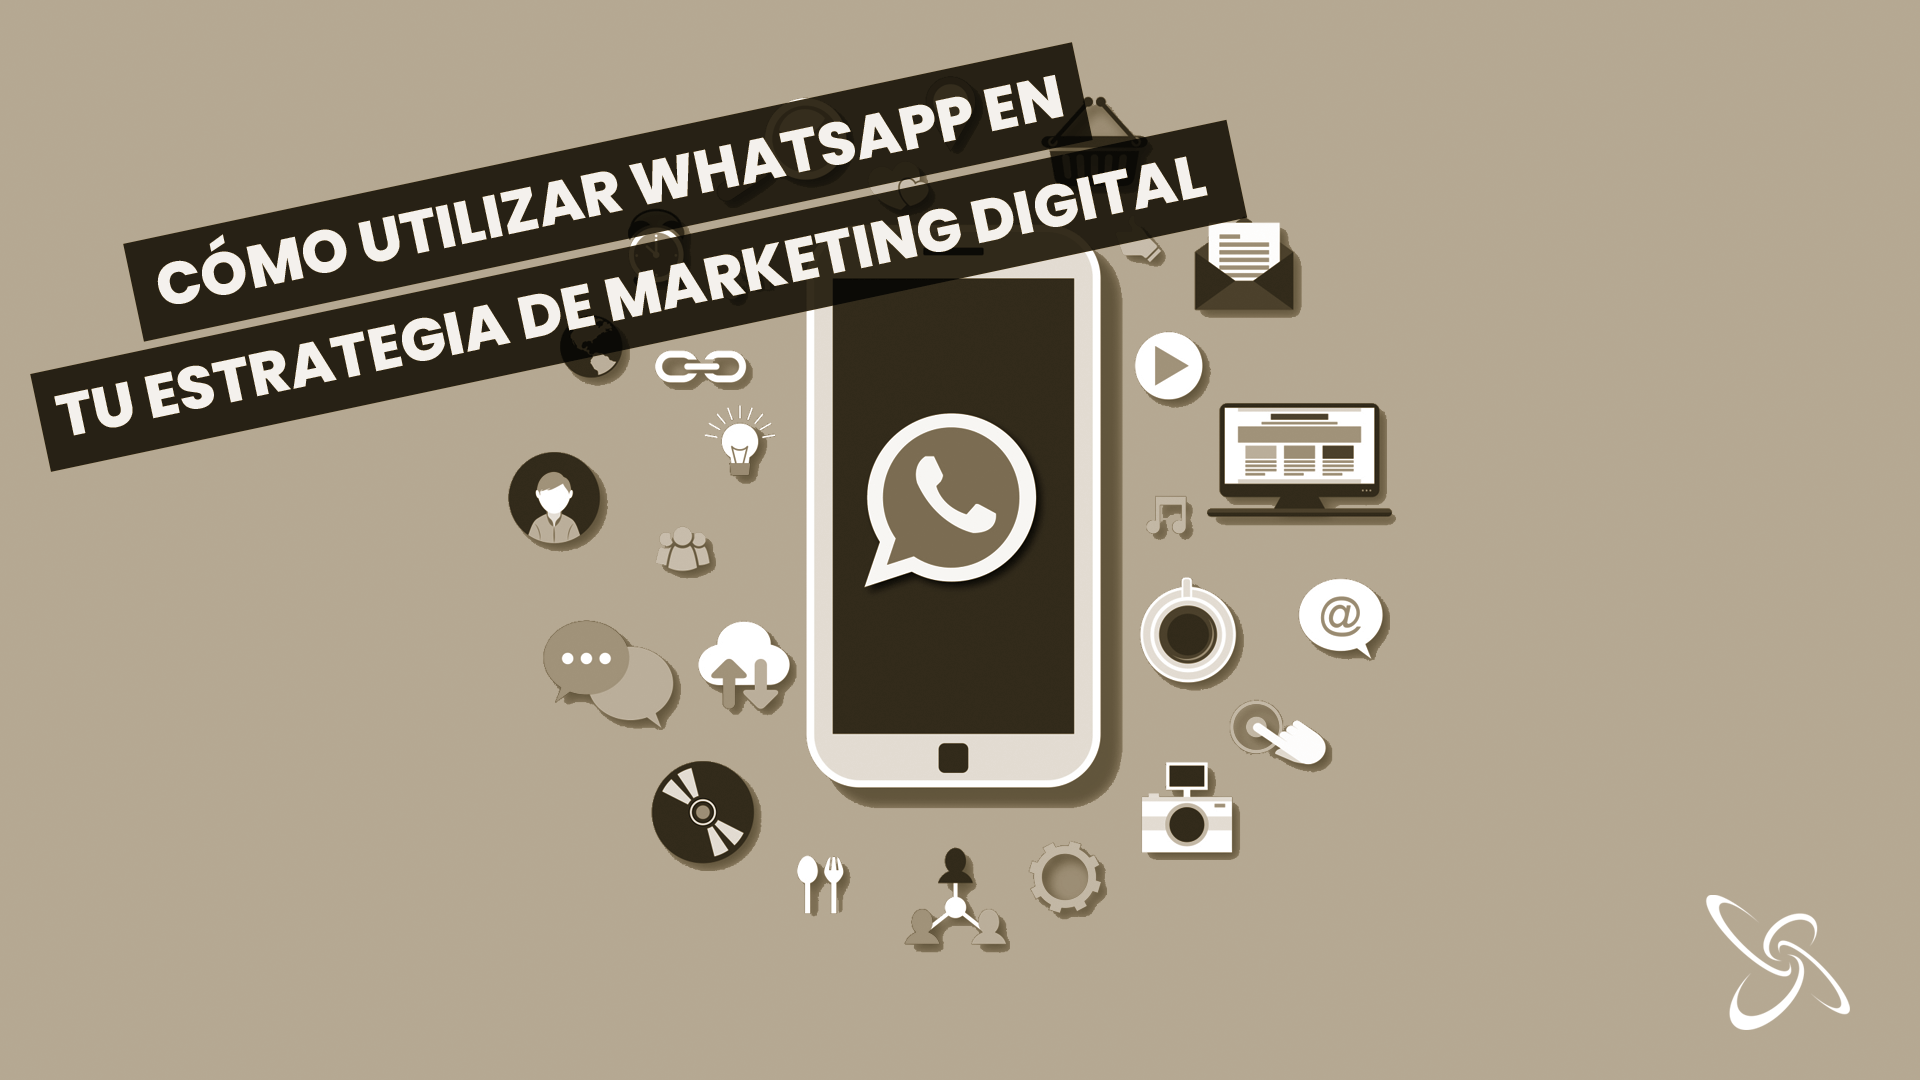 Com utilitzar WhatsApp en la teva estratègia de màrqueting digital